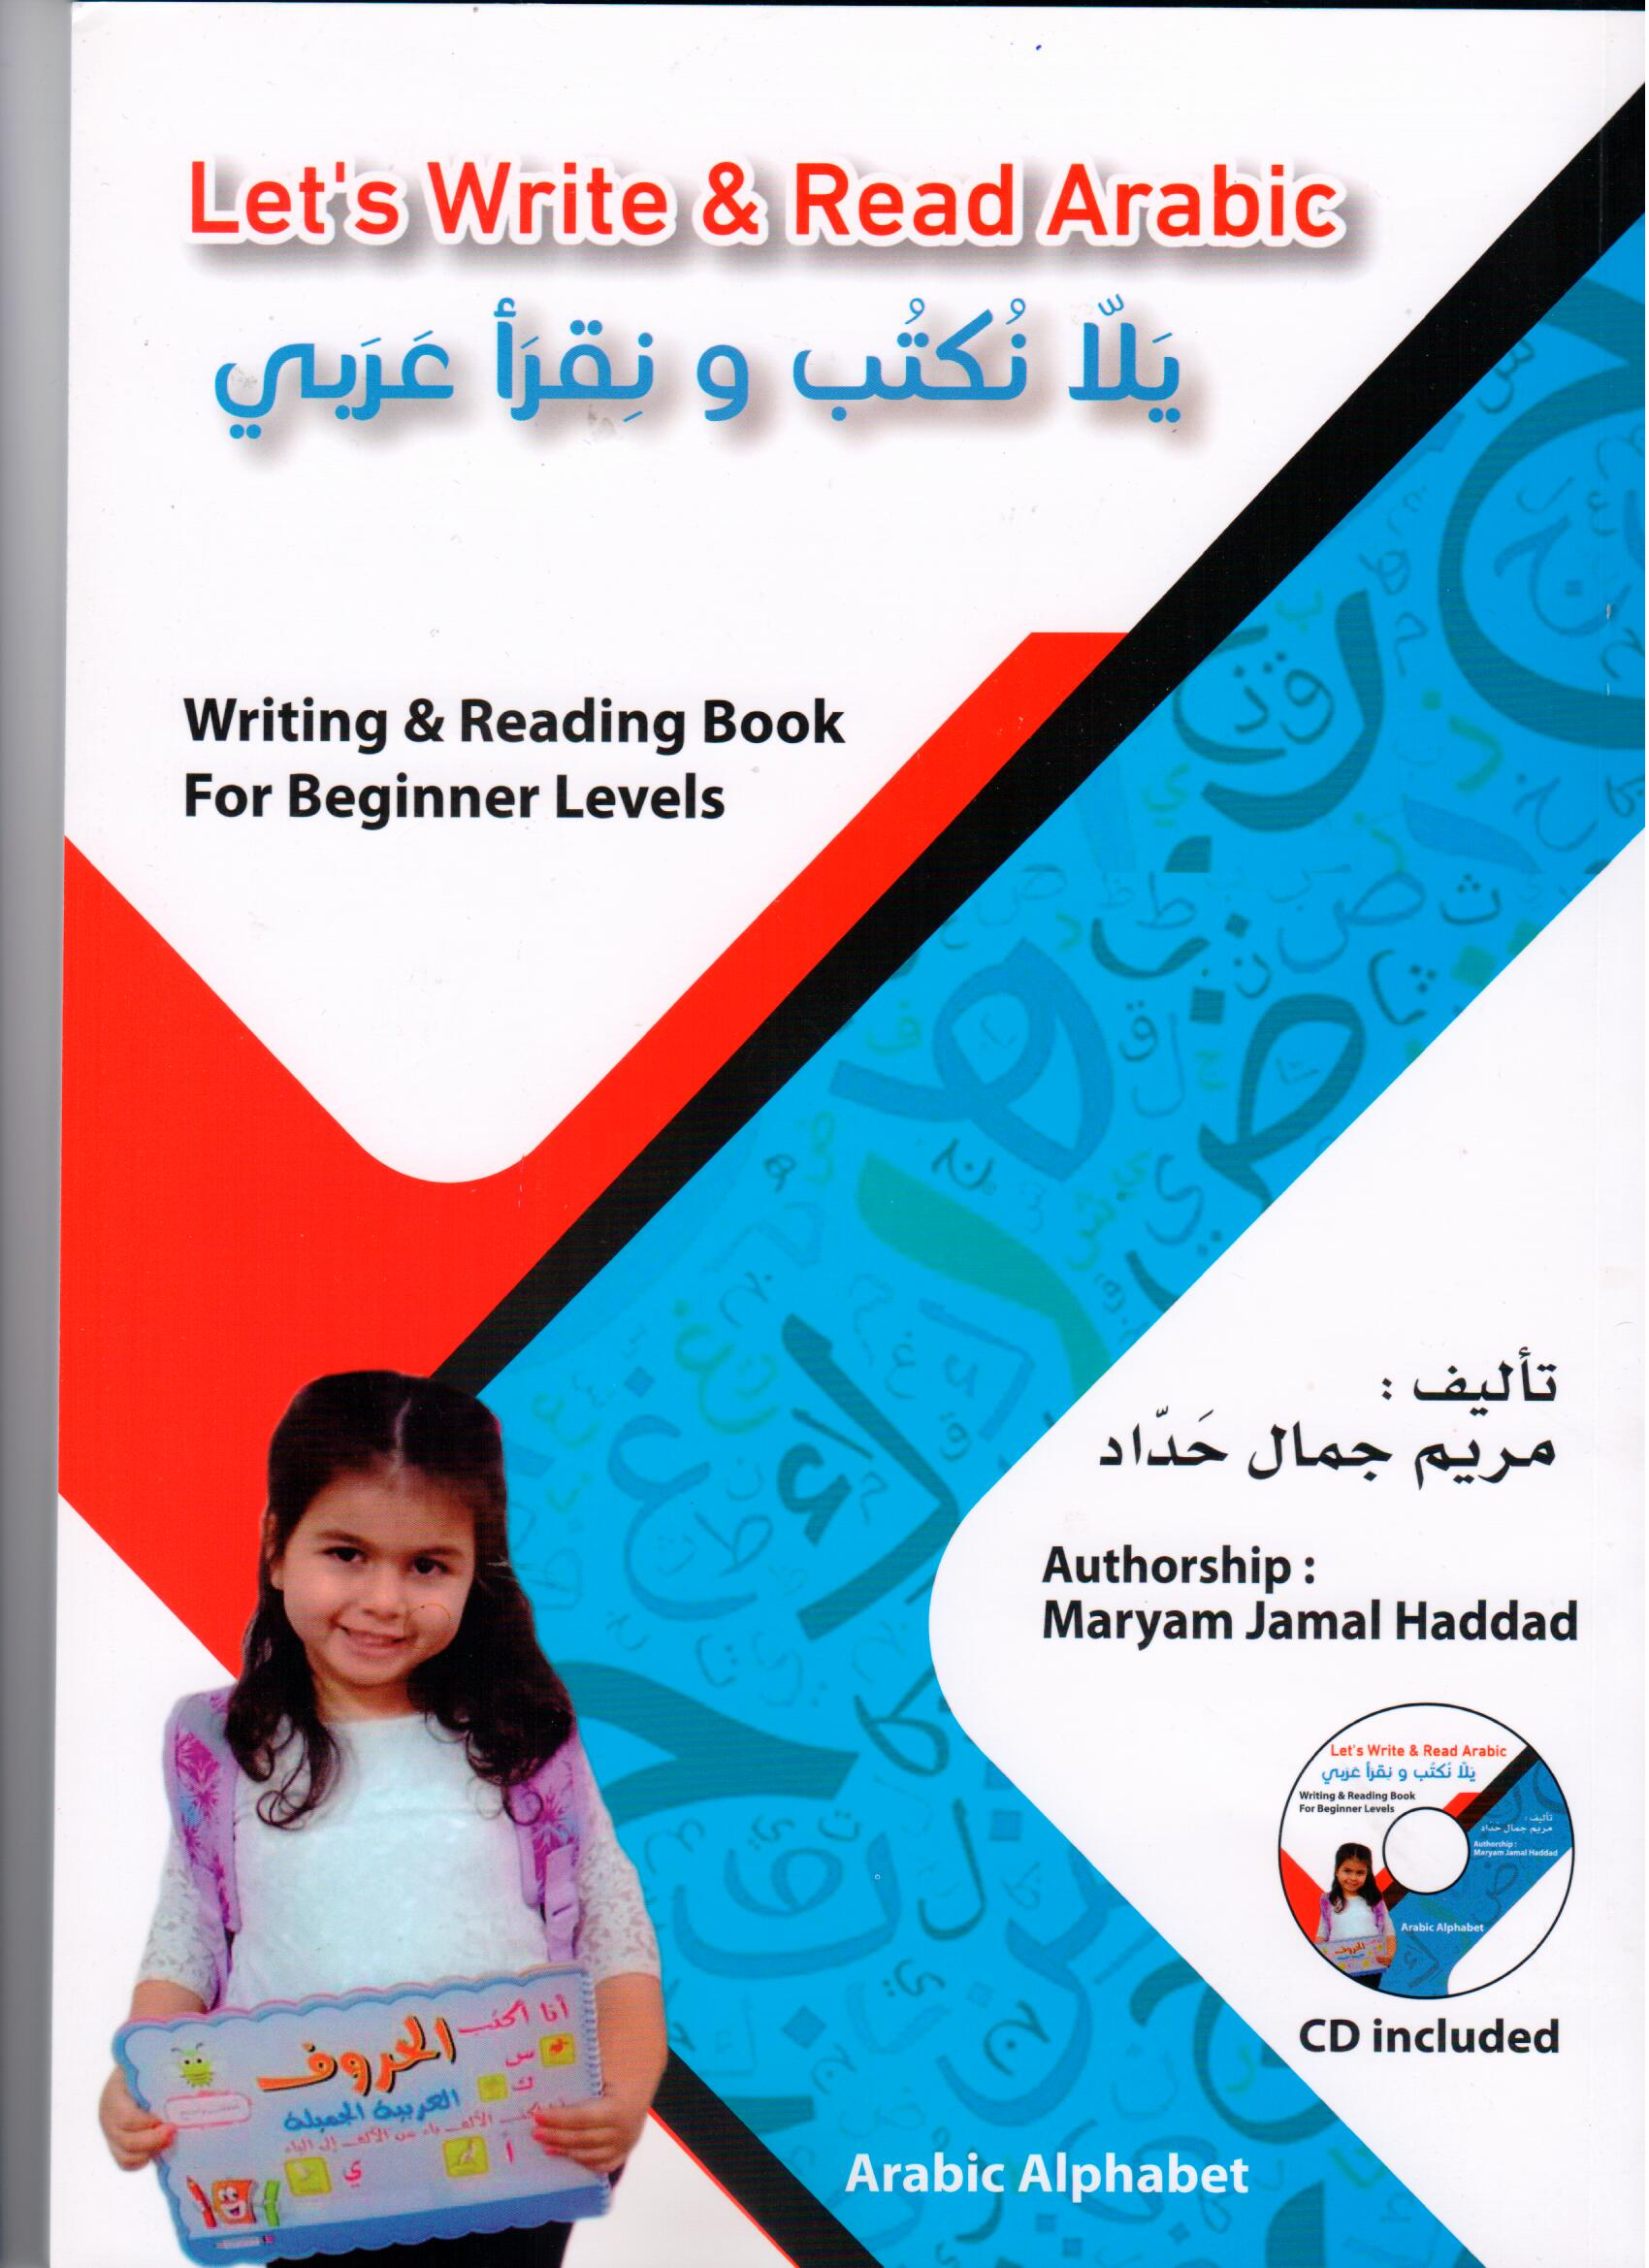 let's write & read arabic